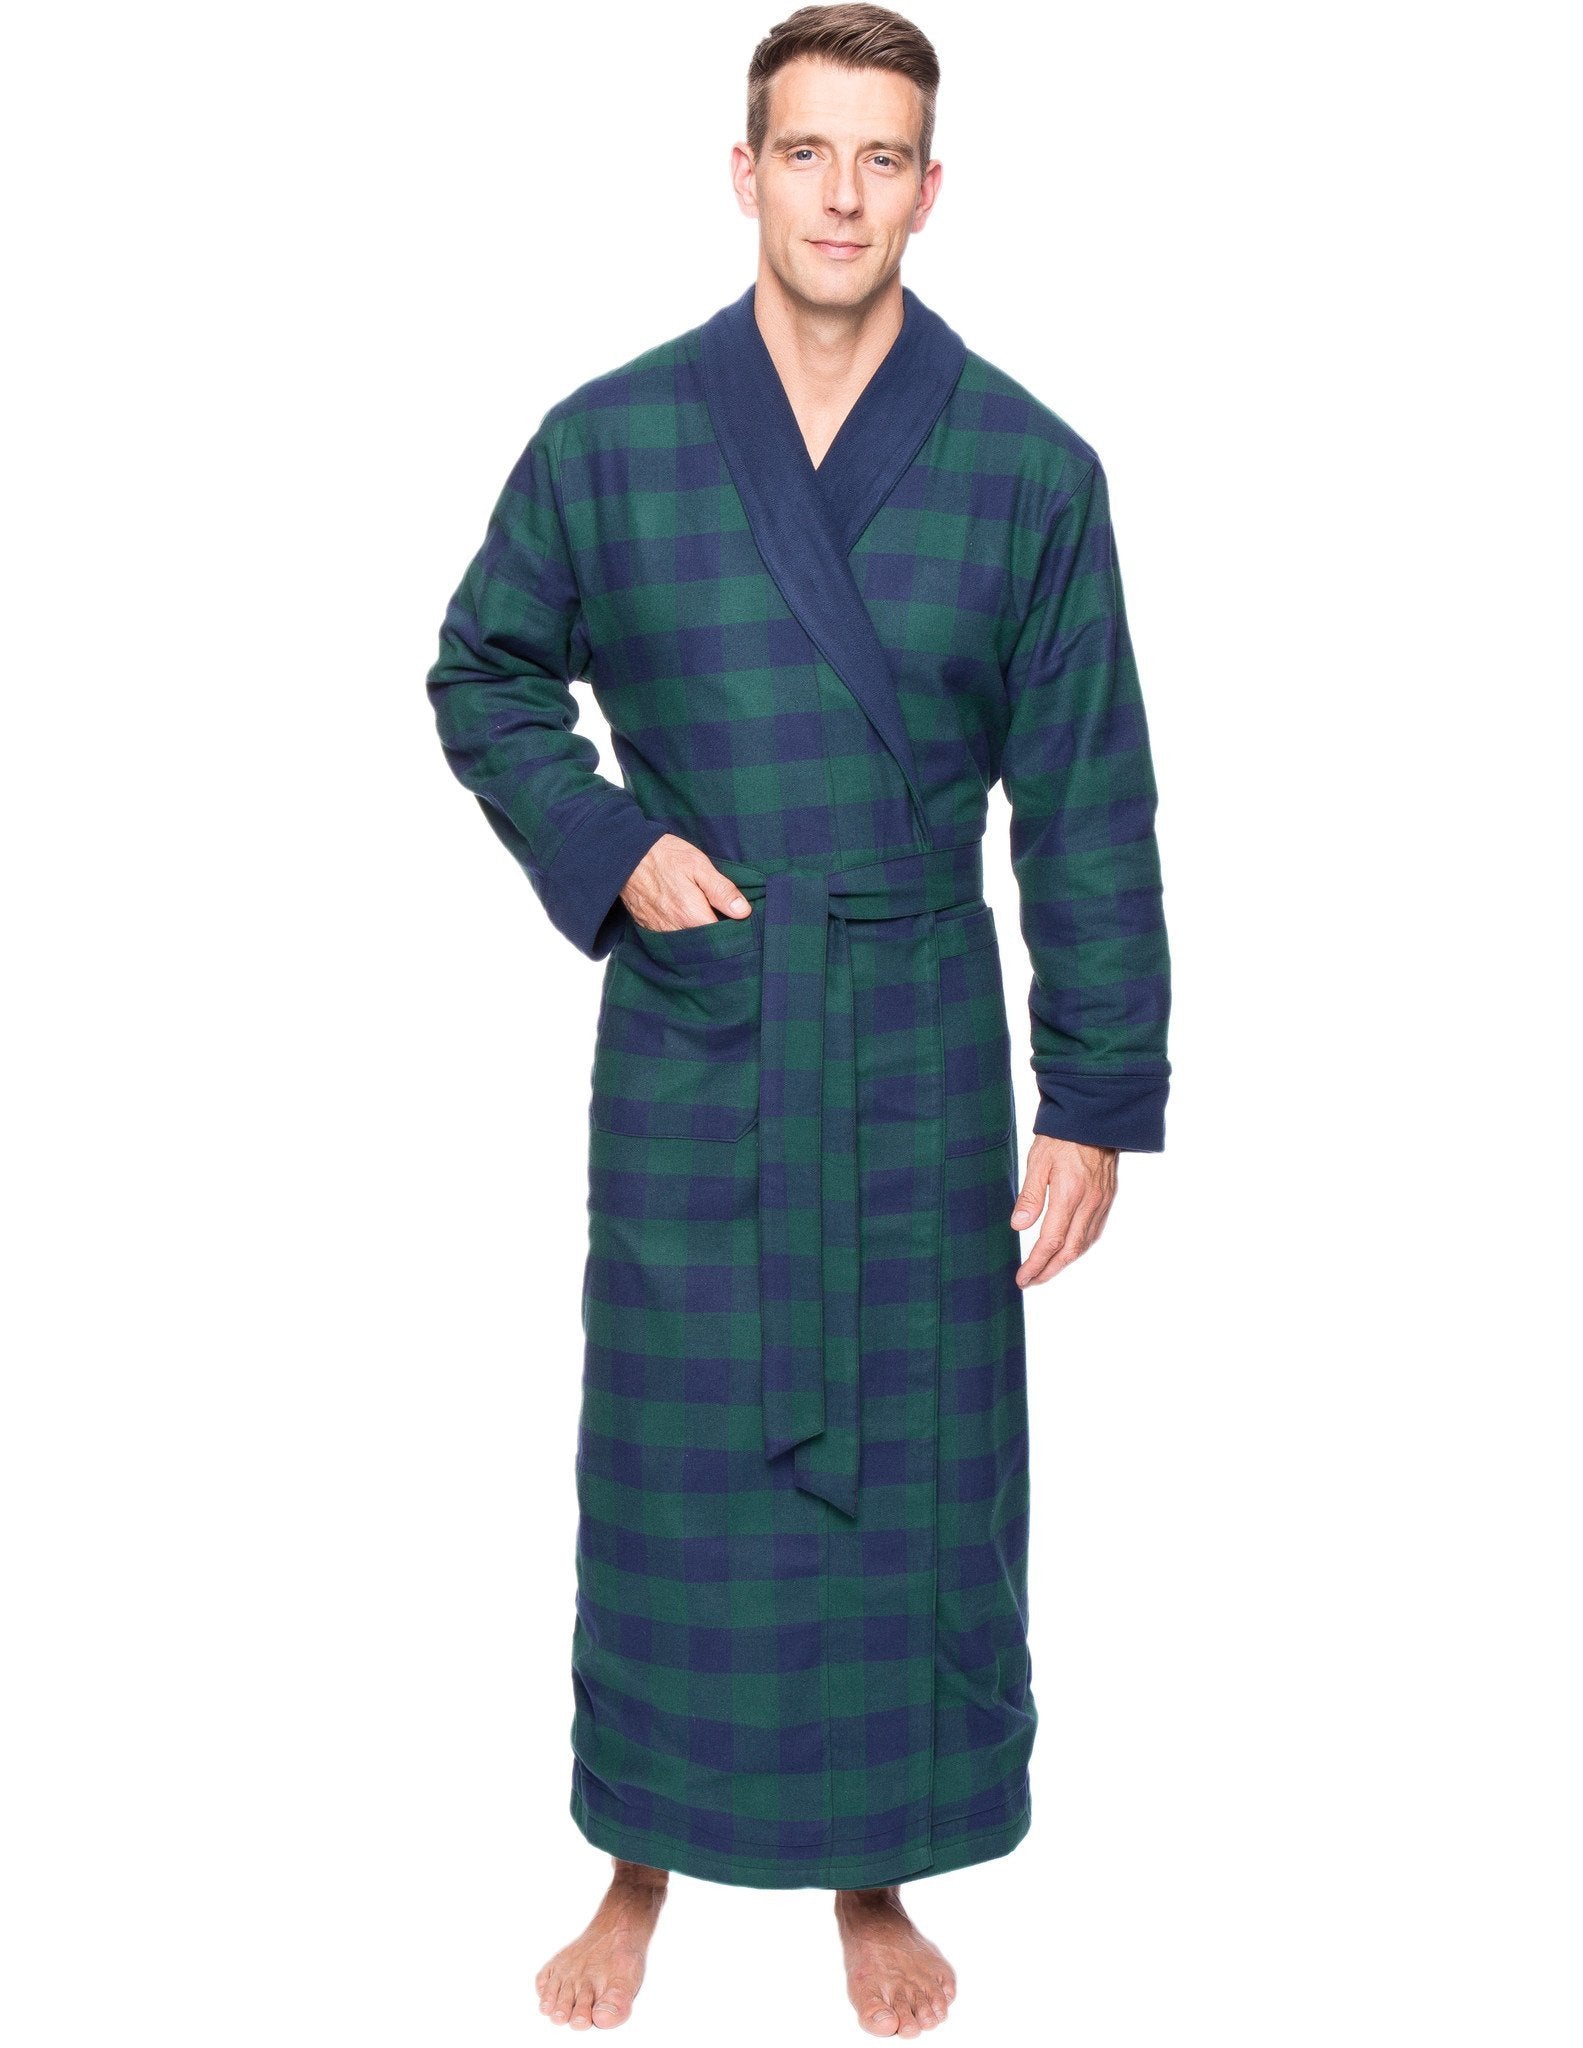 Men's Premium 100% Cotton Flannel Fleece Lined Robe - Gingham Green/Navy